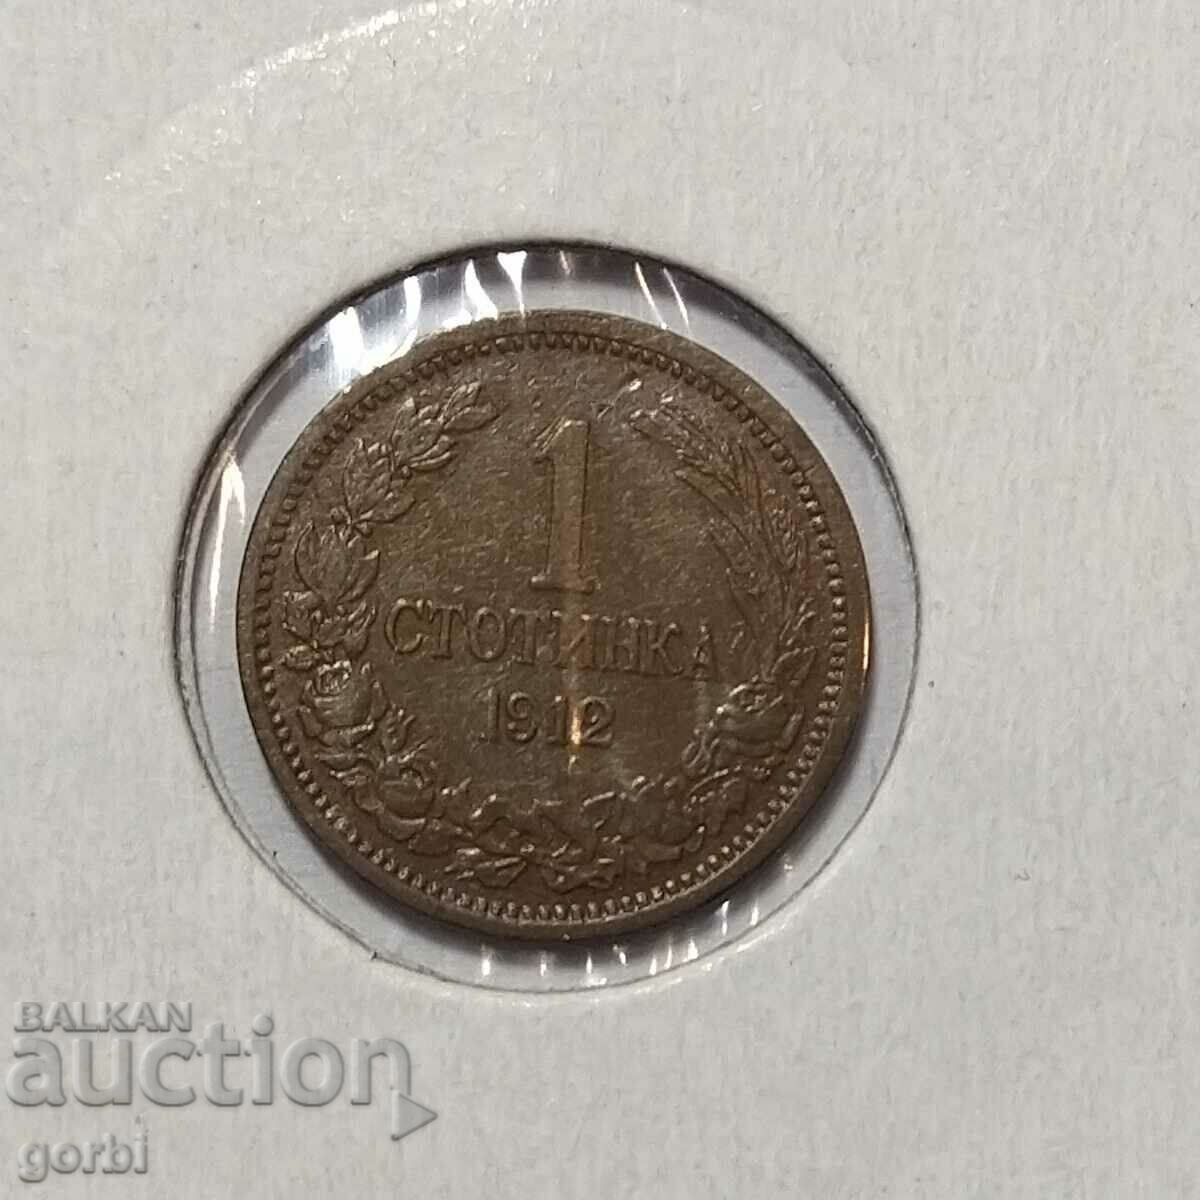 1 cent 1912 Εξαιρετικό για συλλογή!